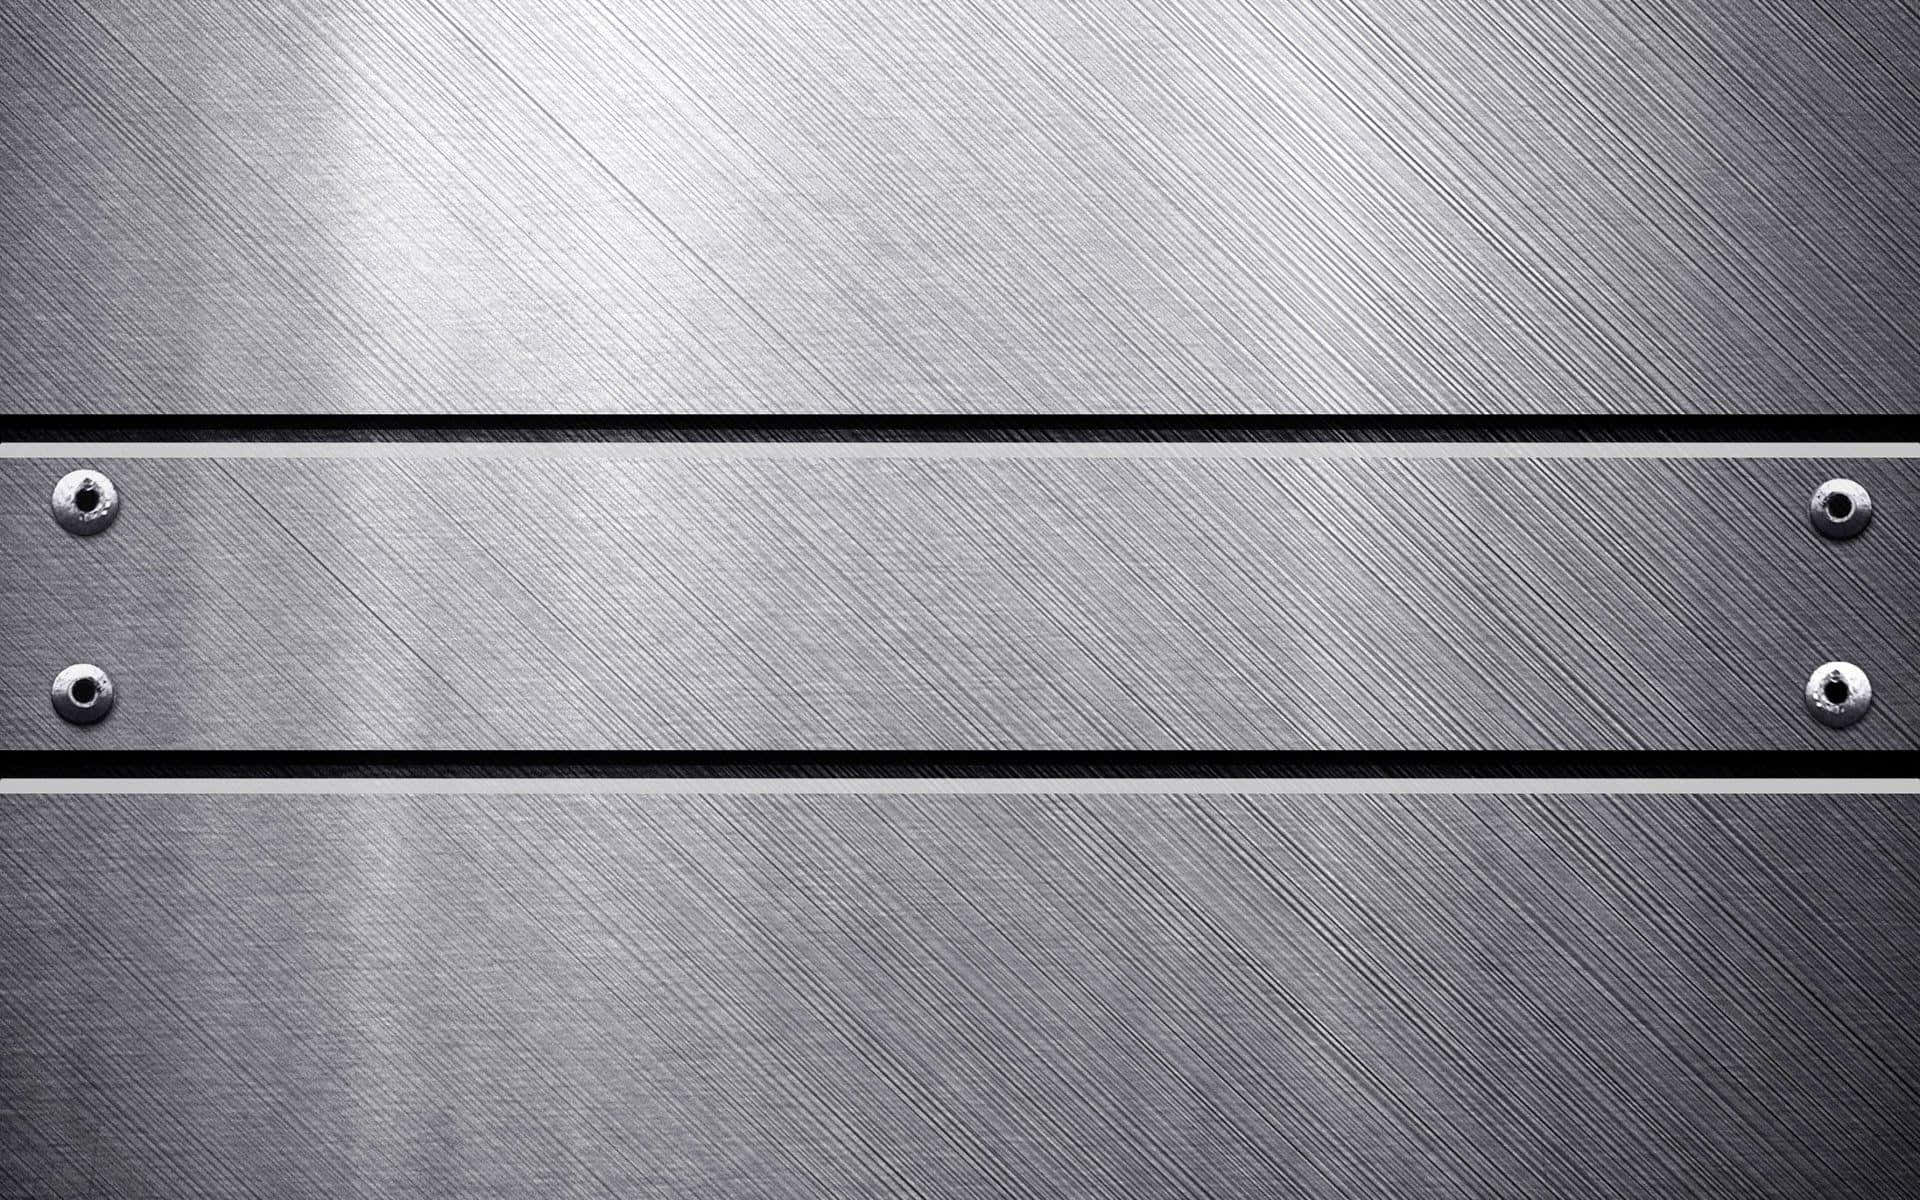 Shiny silver foil on a black background